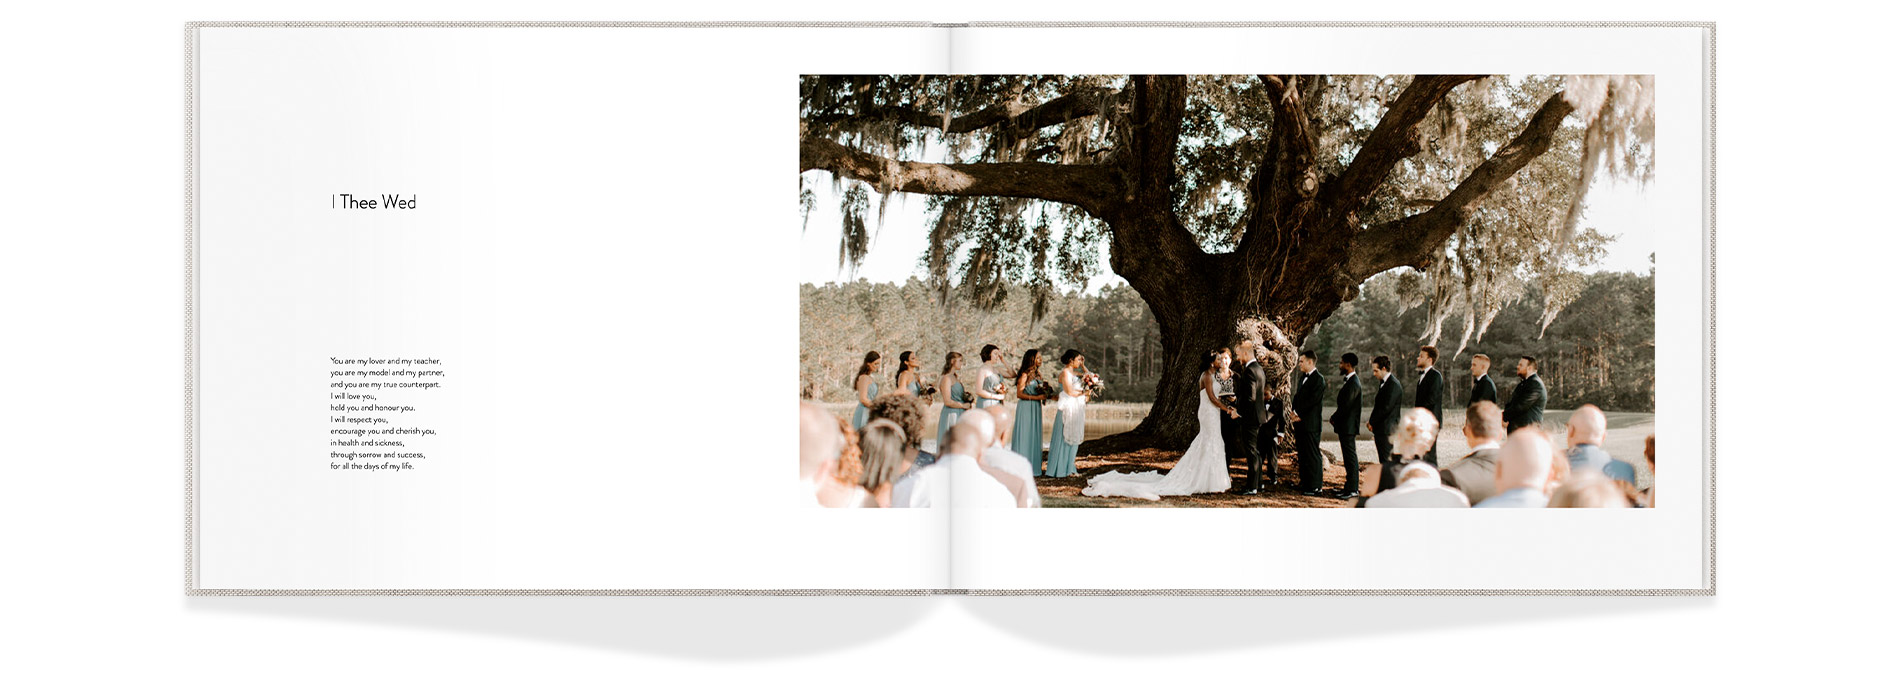 Fotolibro de boda abierto con la pareja en una escena natural.